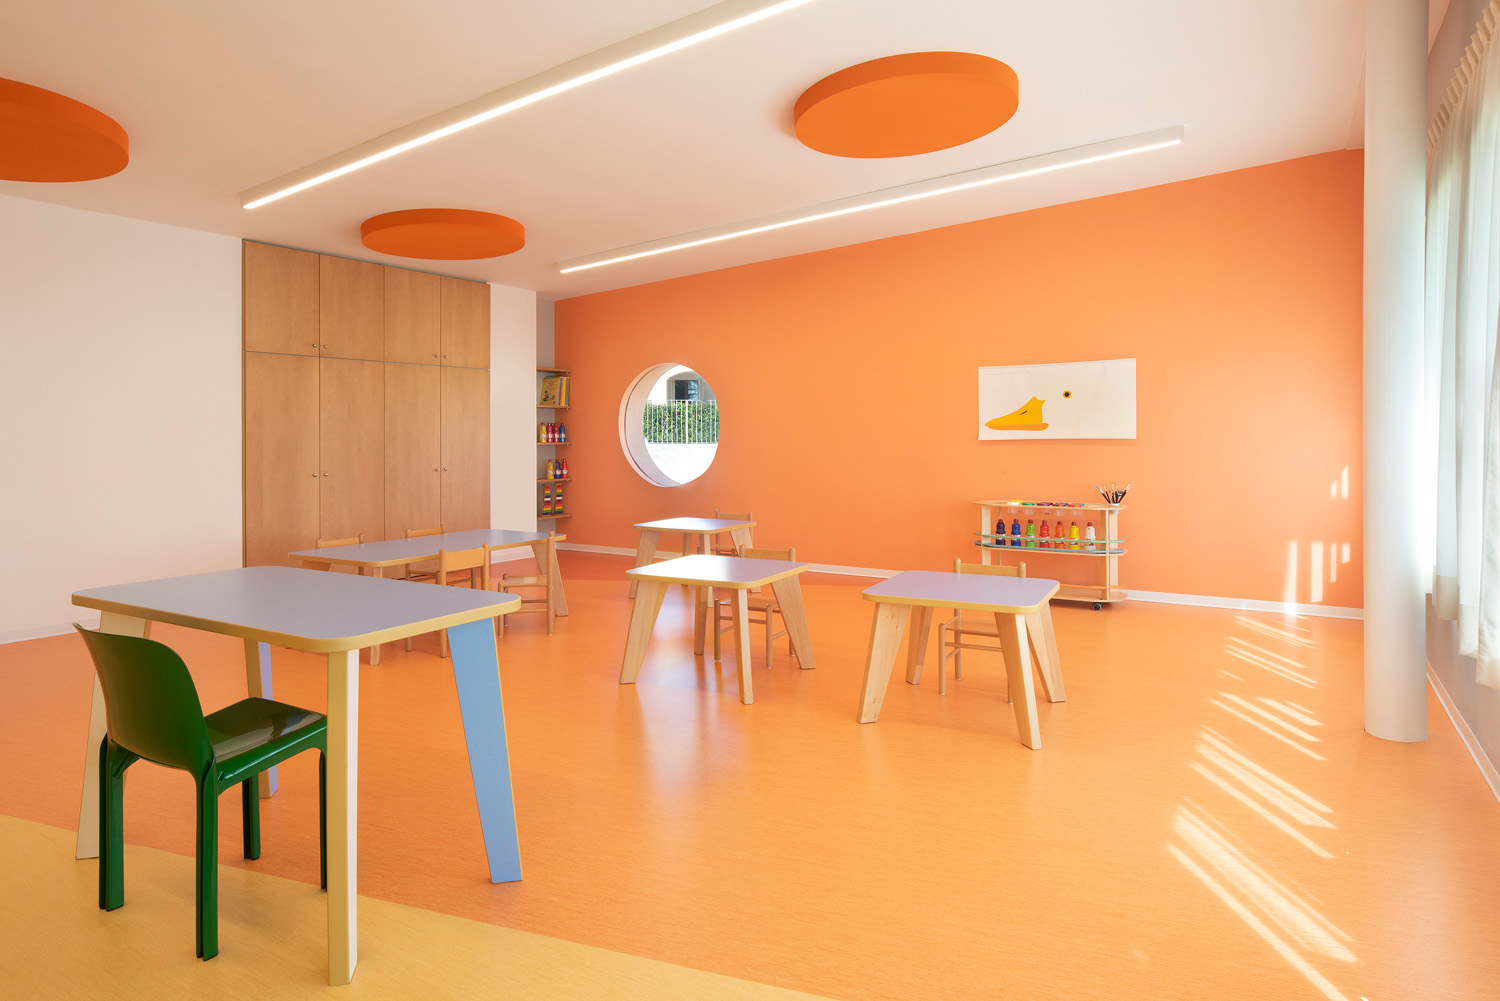 Un'aula moderna e luminosa con una finestra rotonda e le pareti e il pavimento arancioni.